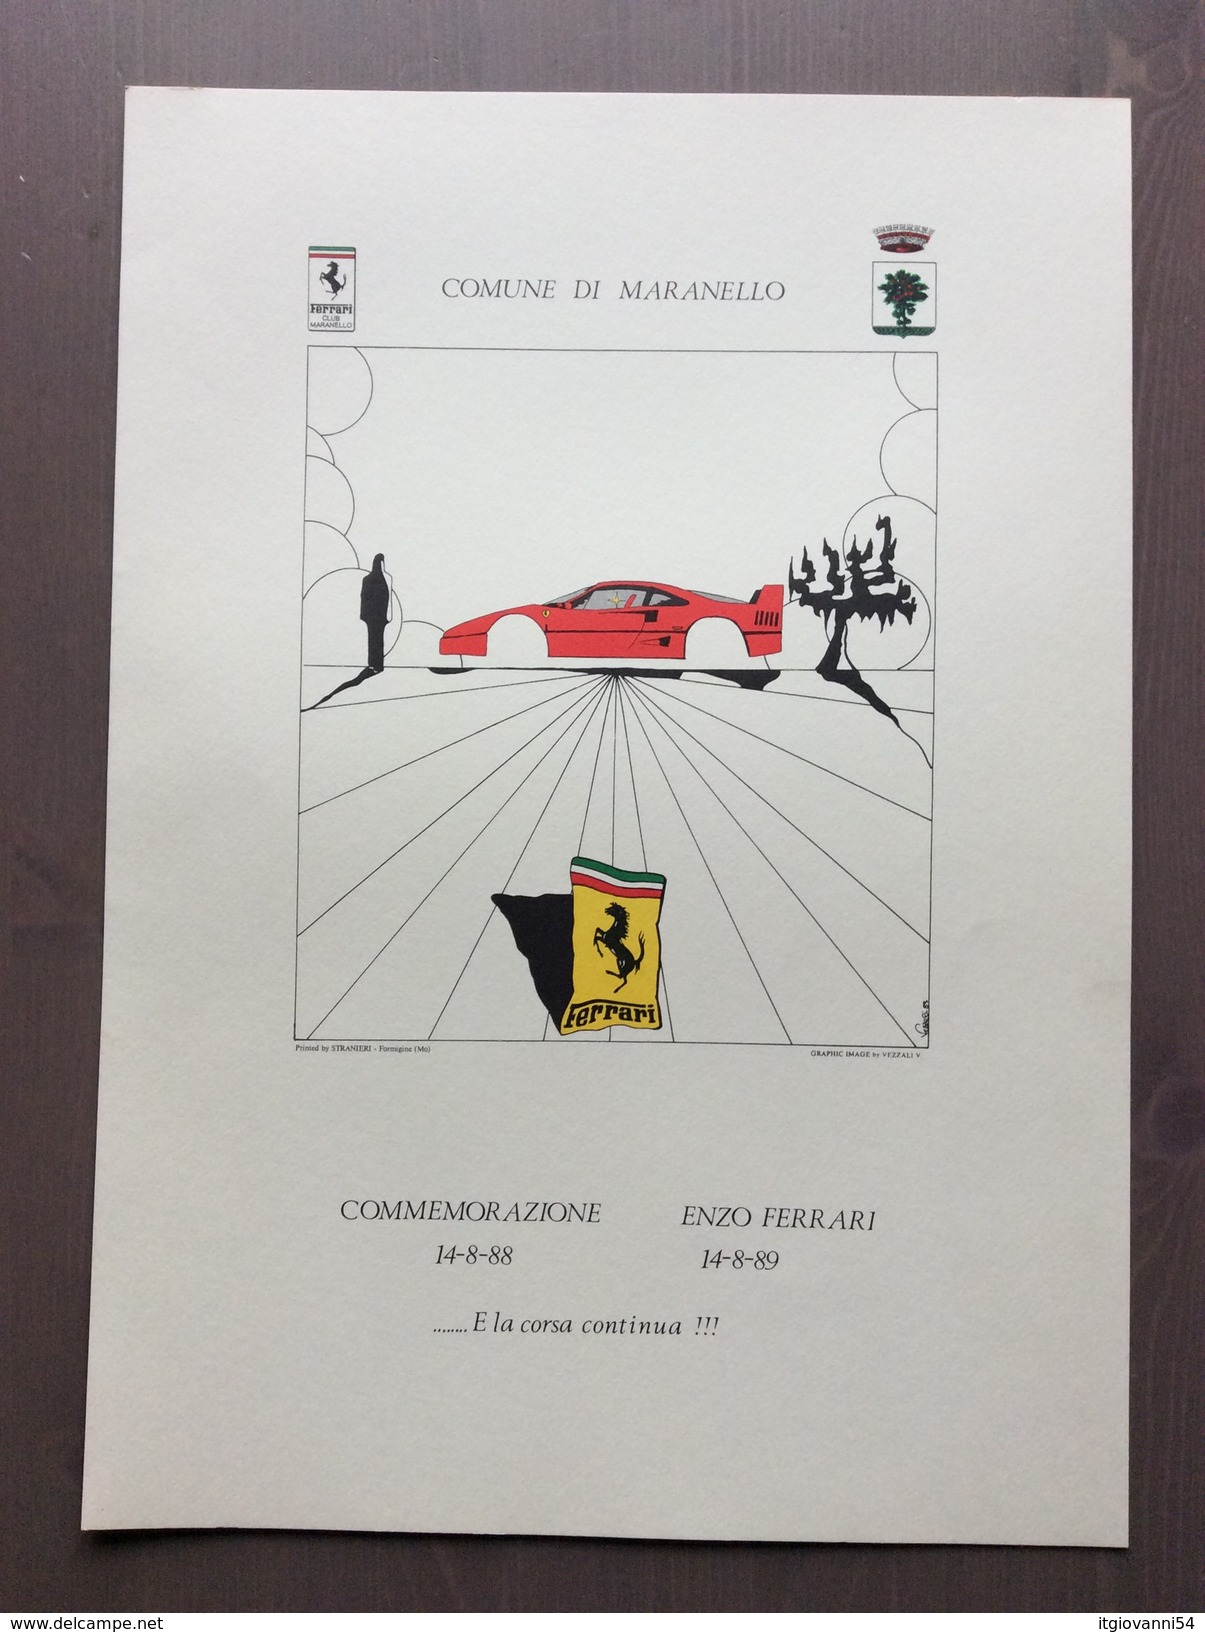 Cartella Della Galleria Ferrari Con 3 Stampe A Colori Di V. Vezzali Commemorazioni Della Morte Di Enzo Ferrari - Automobile - F1